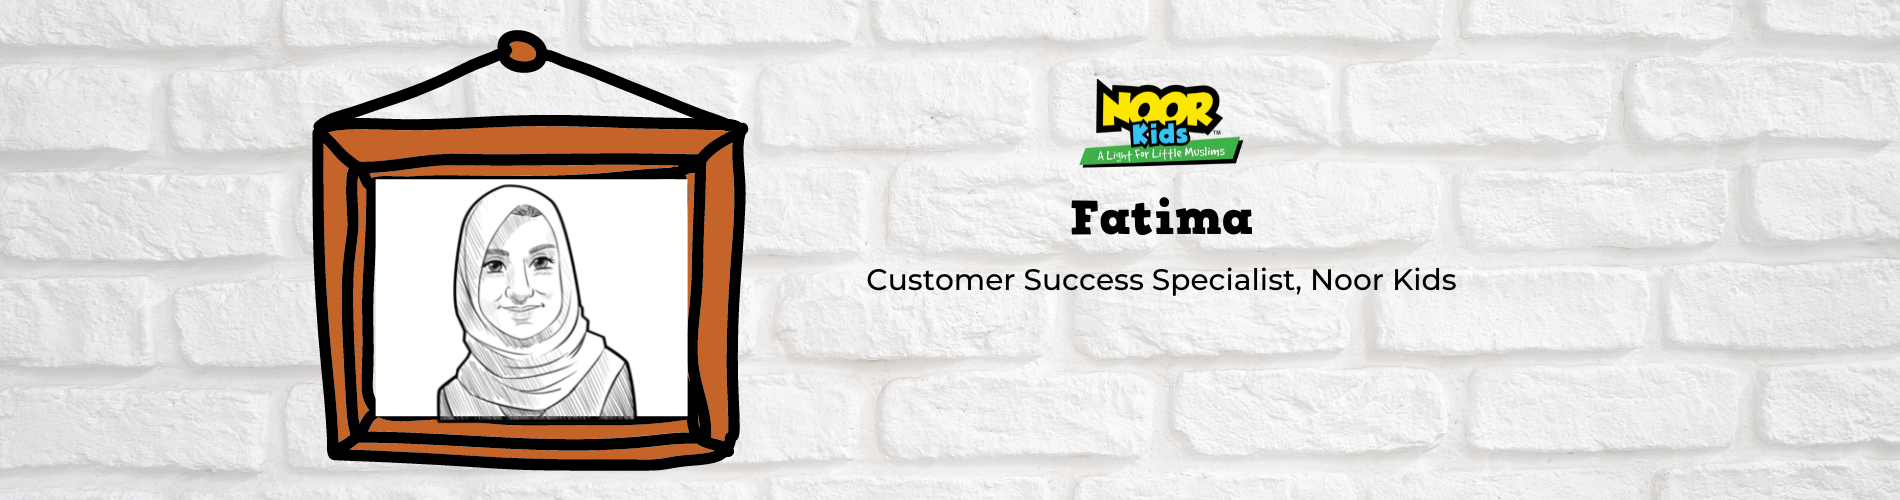 Meet Fatima, Customer Success Specialist at Noor Kids